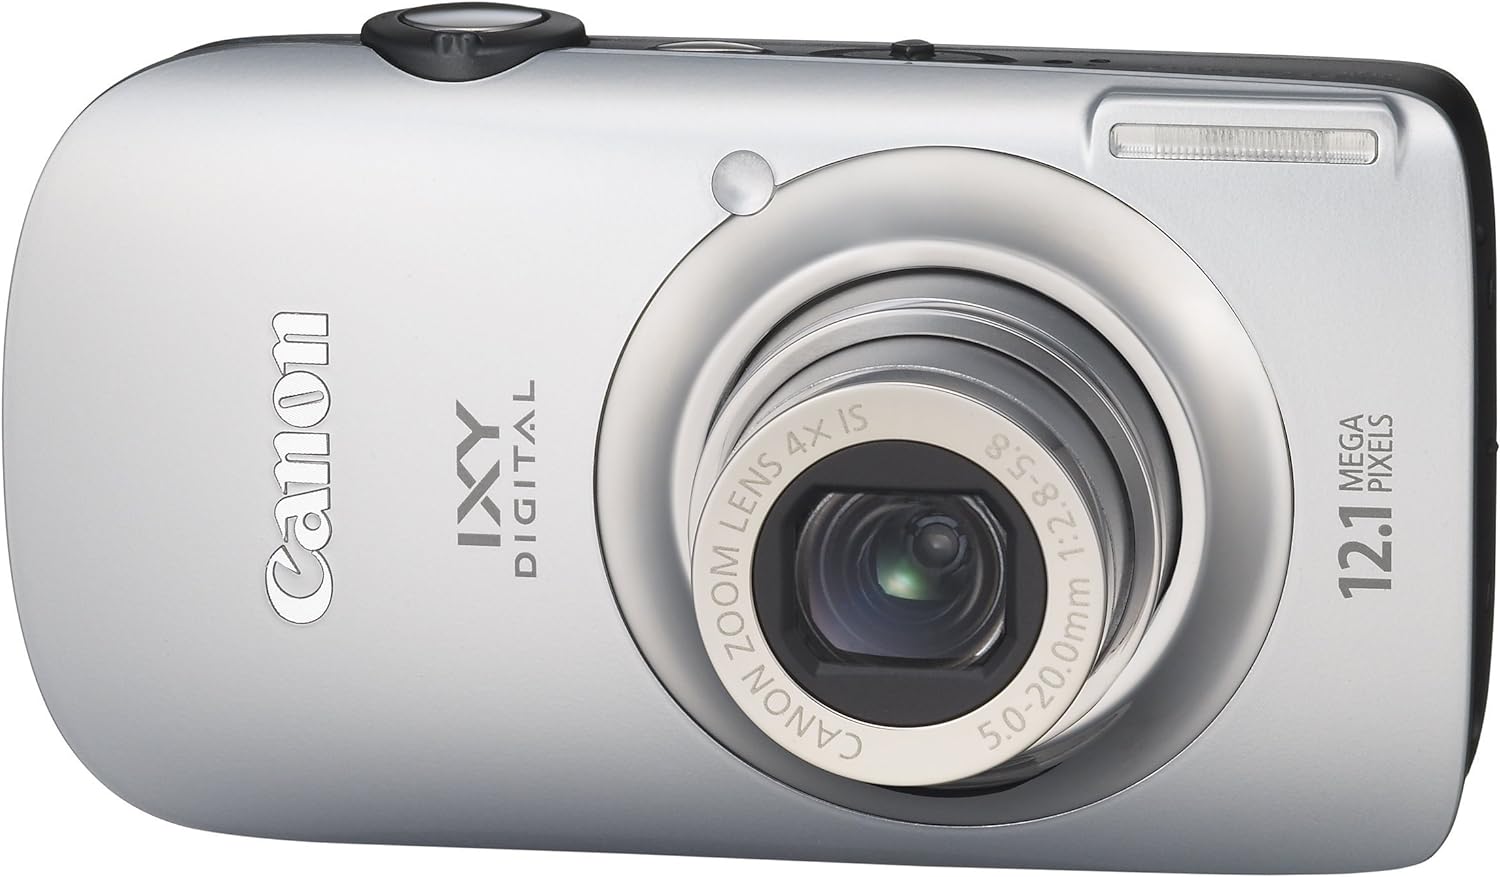 【中古】Canon デジタルカメラ IXY DIGITAL (イクシ) 510 IS シルバー IXYD510IS(SL)